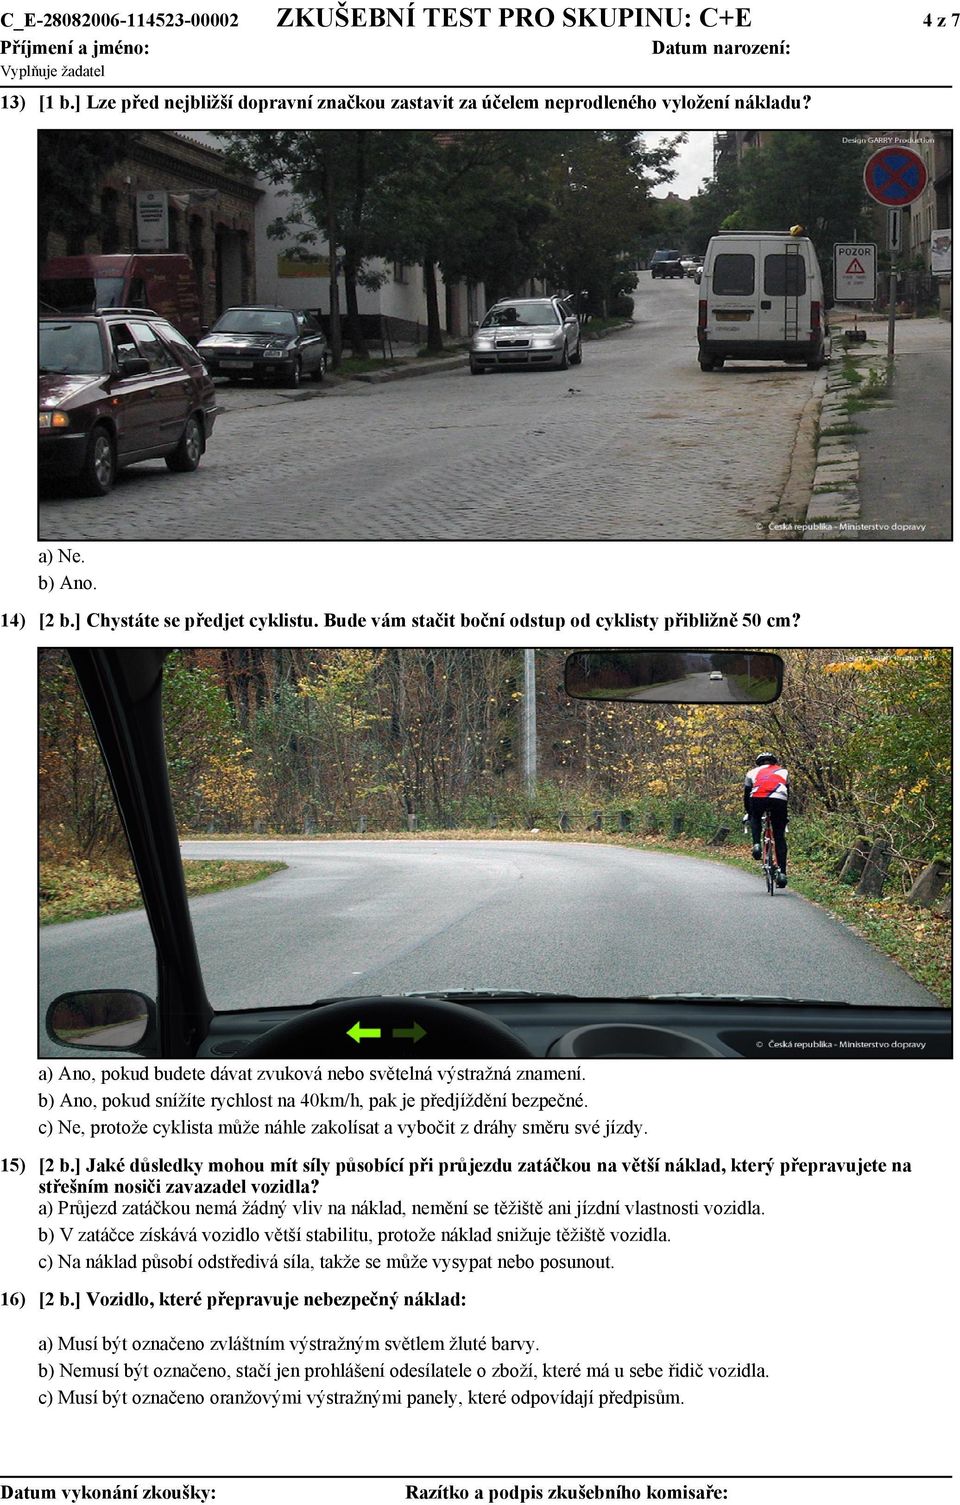 b) Ano, pokud snížíte rychlost na 40km/h, pak je předjíždění bezpečné. c) Ne, protože cyklista může náhle zakolísat a vybočit z dráhy směru své jízdy. 15) [2 b.